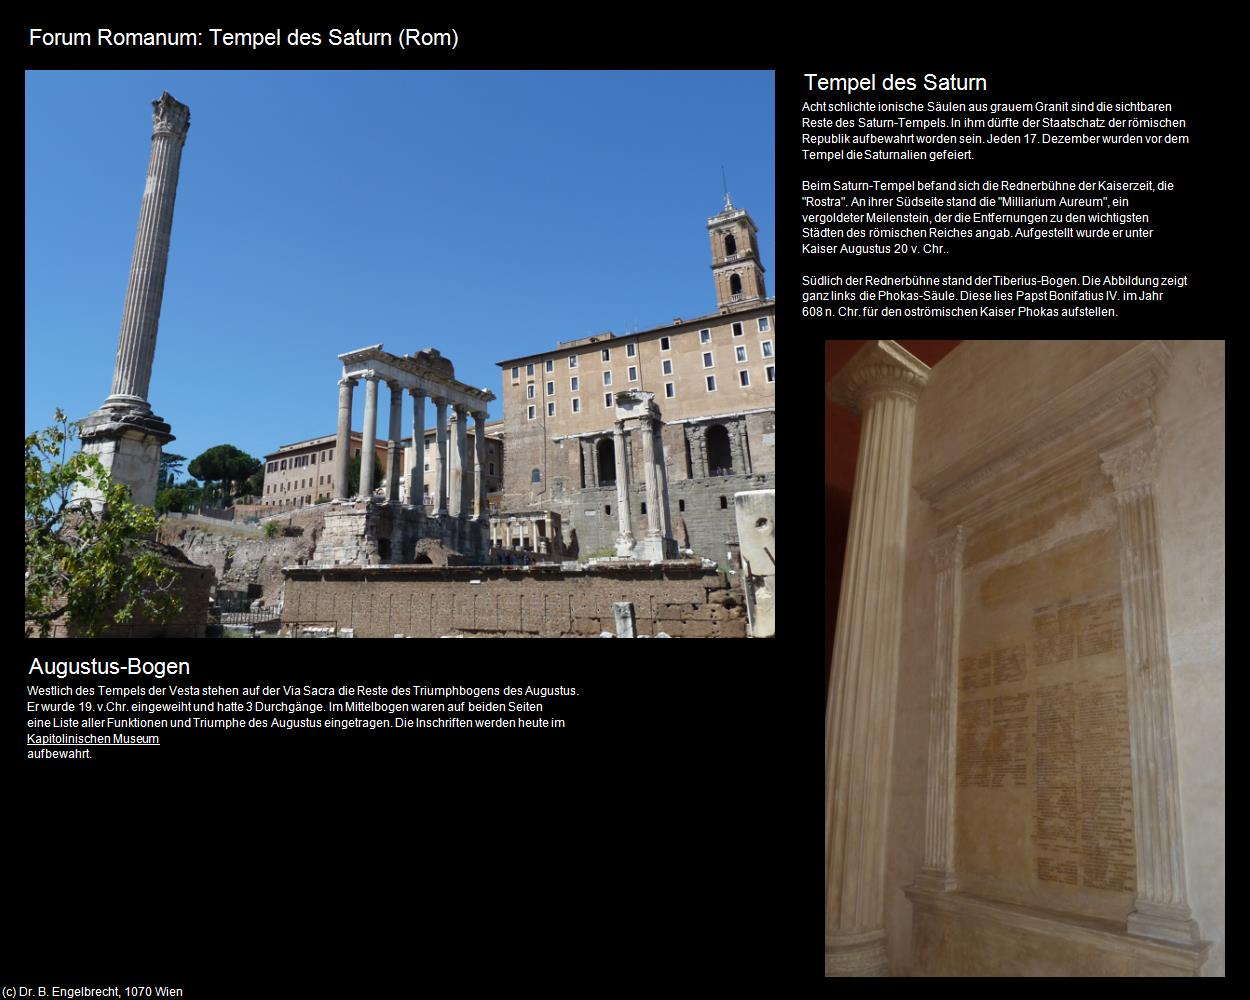 Forum Romanum: Tempel des Saturn (Rom-04-Forum Romanum und Umgebung) in ROM(c)B.Engelbrecht